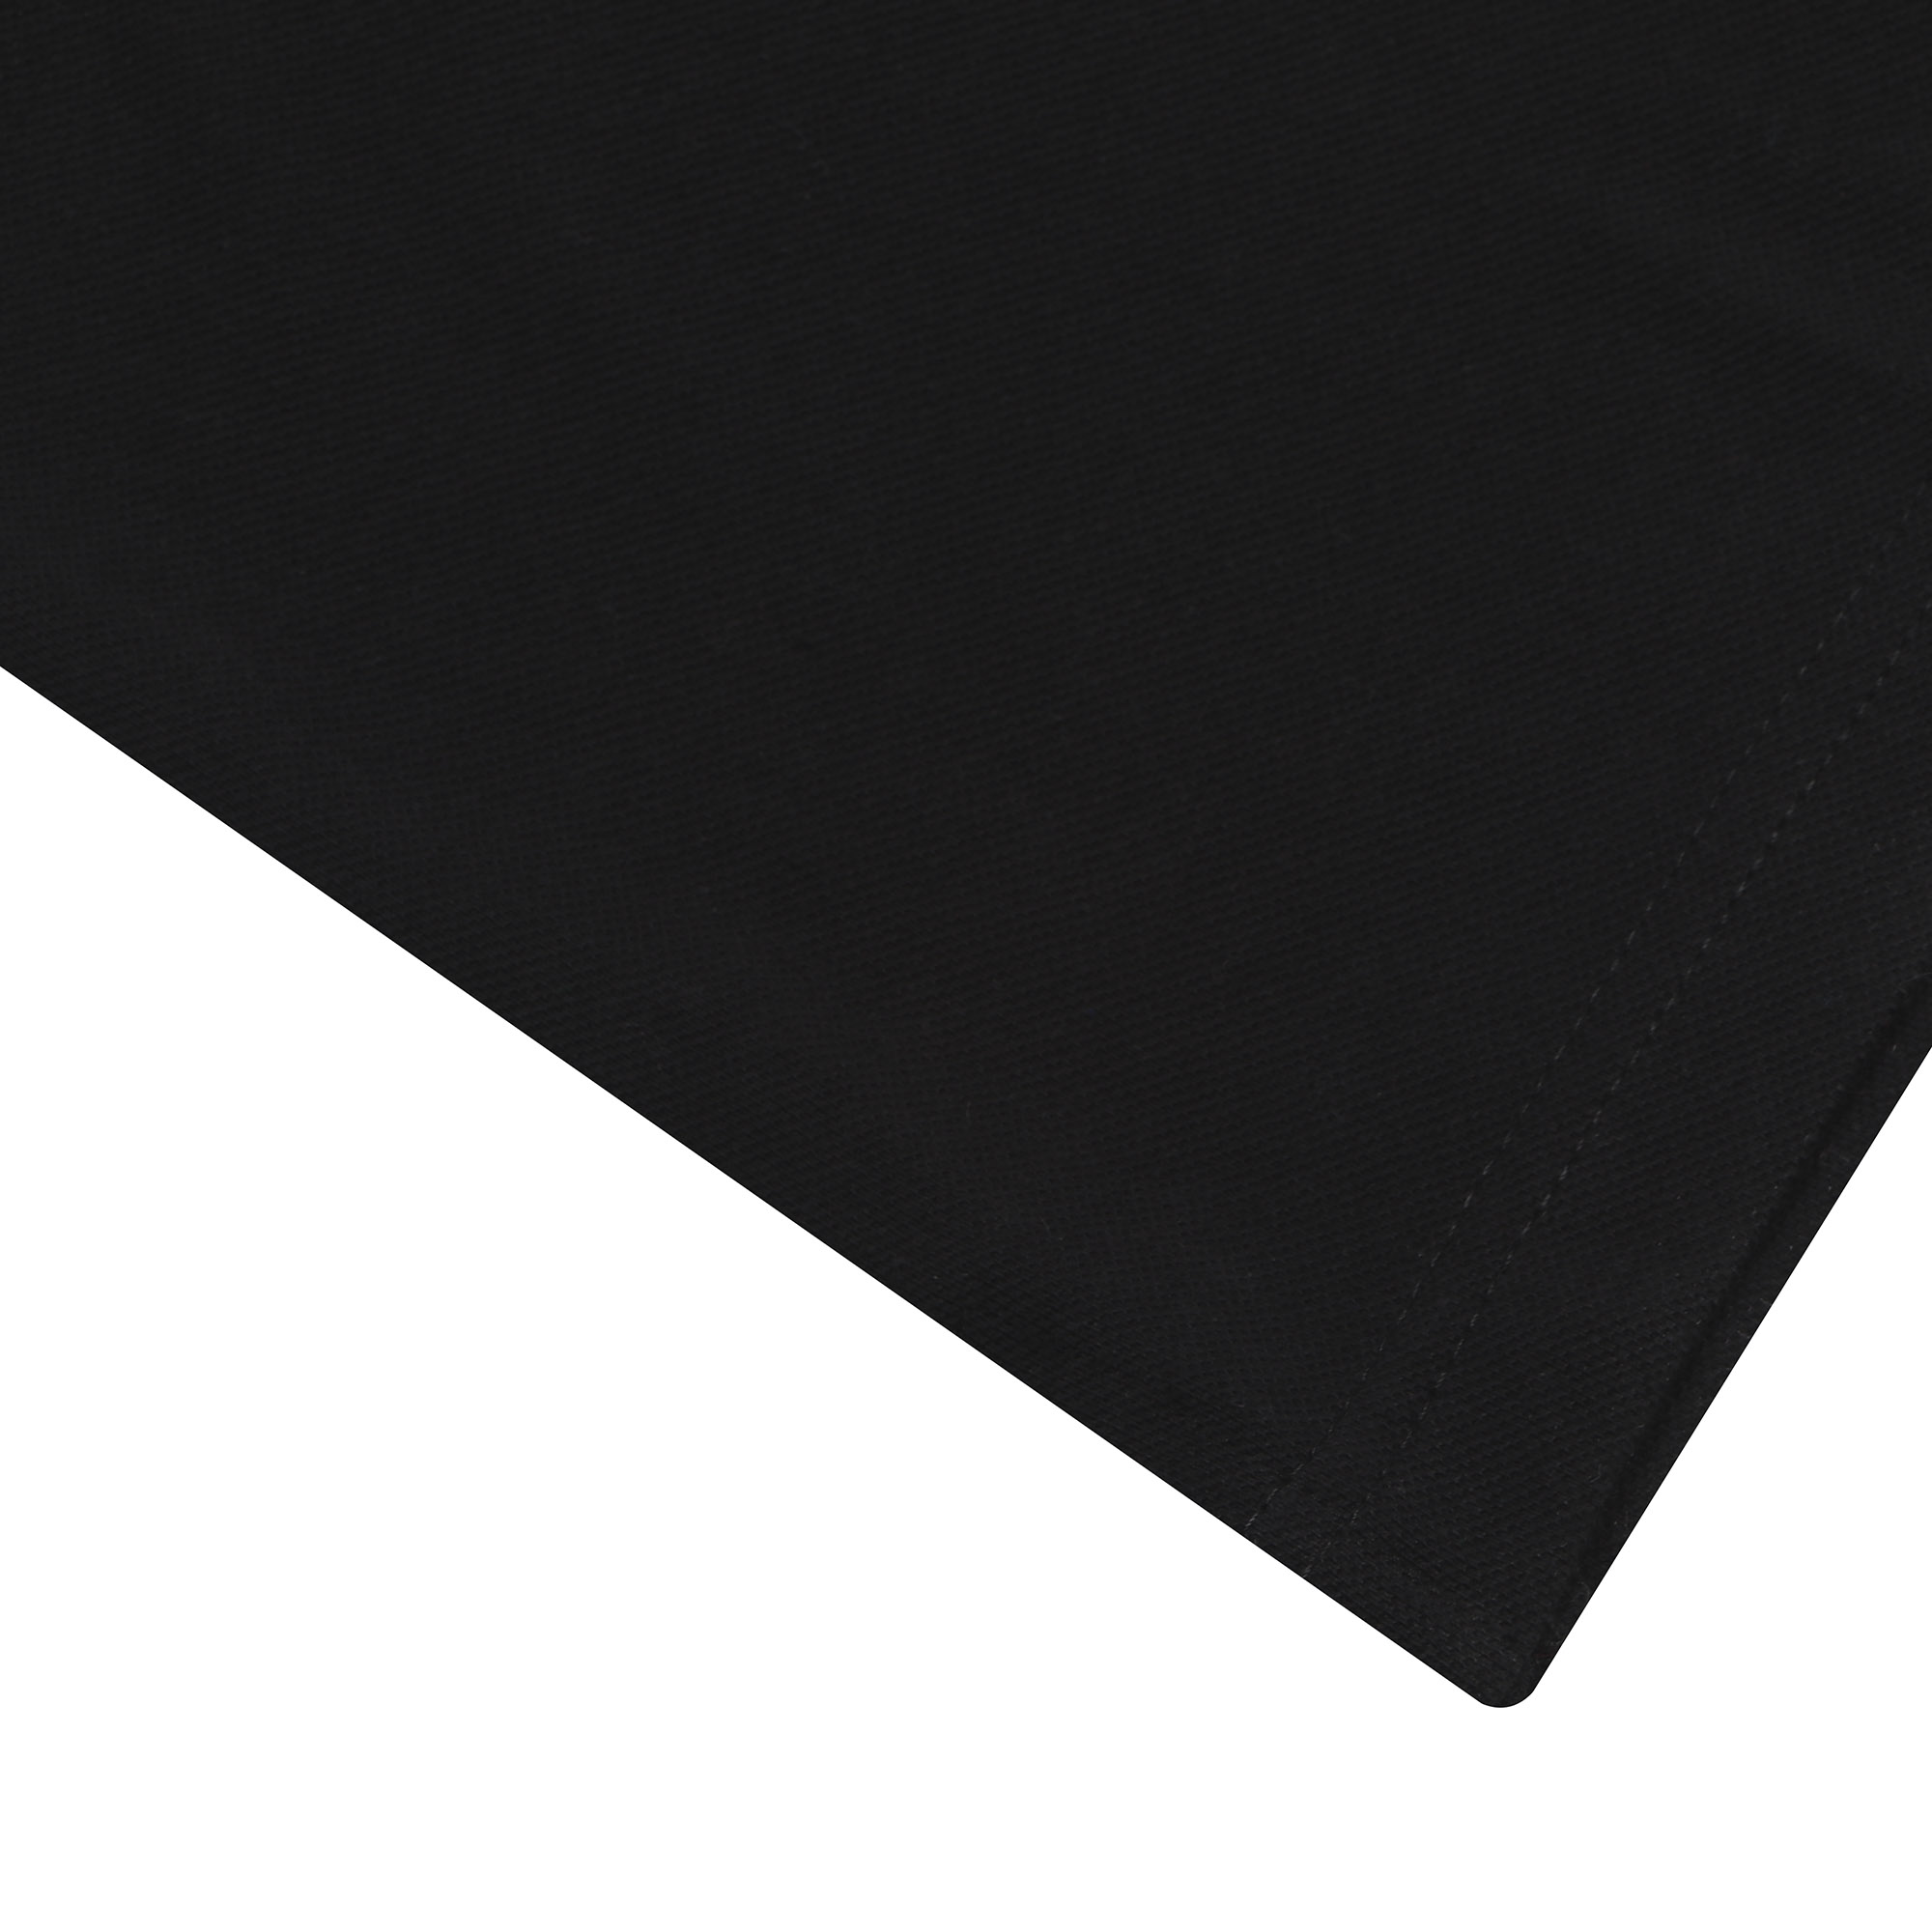 Женское поло AMADEY с коротким рукавом XXXL черное, цвет черный, размер XXXL - фото 6